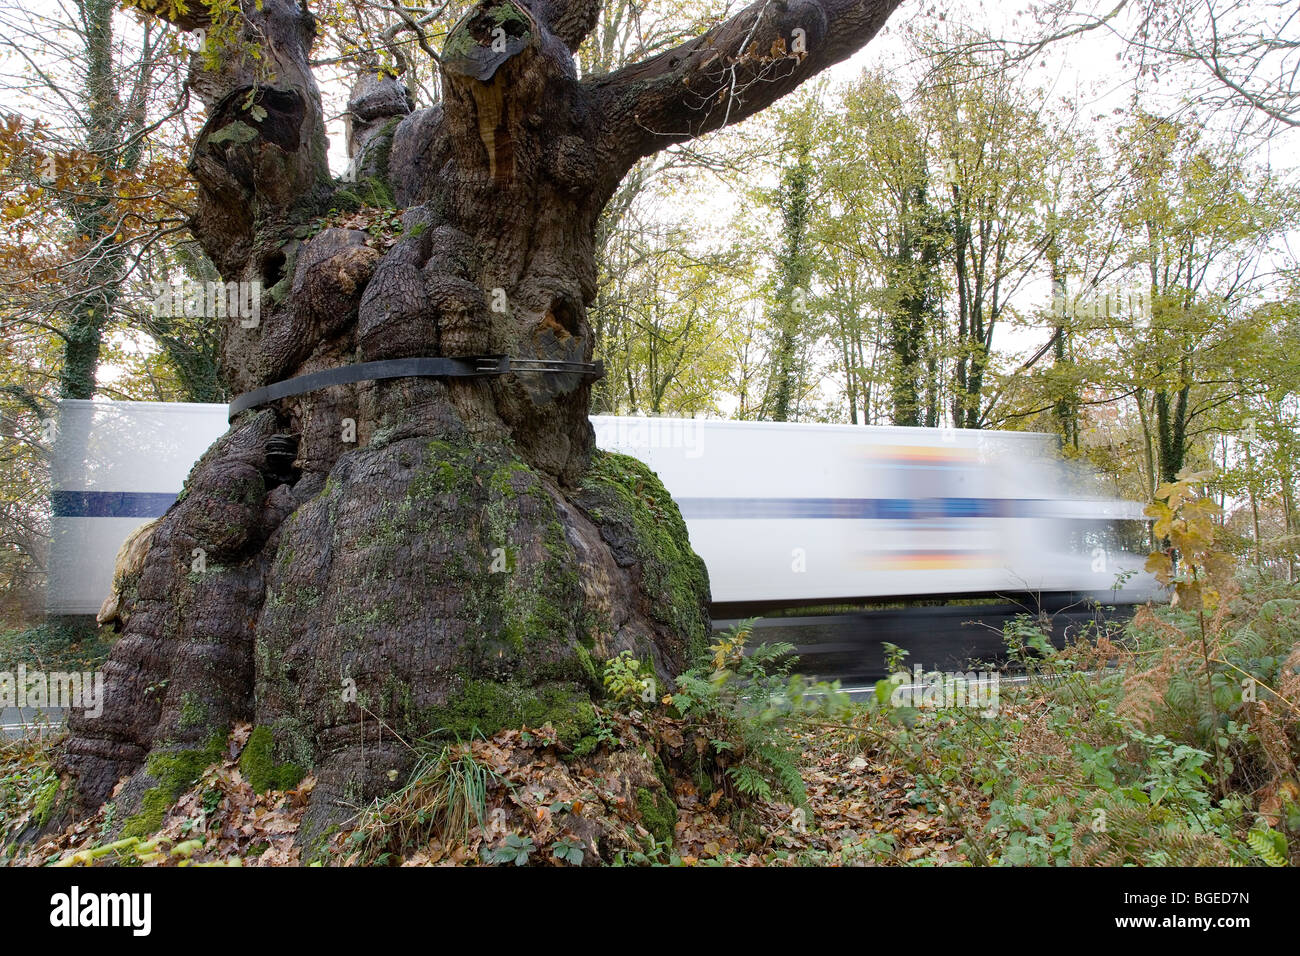 Big Belly Oak en el bosque de Savernake cerca de Marlborough Wiltshire Reino Unido el árbol tiene más de 1000 años, todavía está vivo creciendo en una carretera. Foto de stock